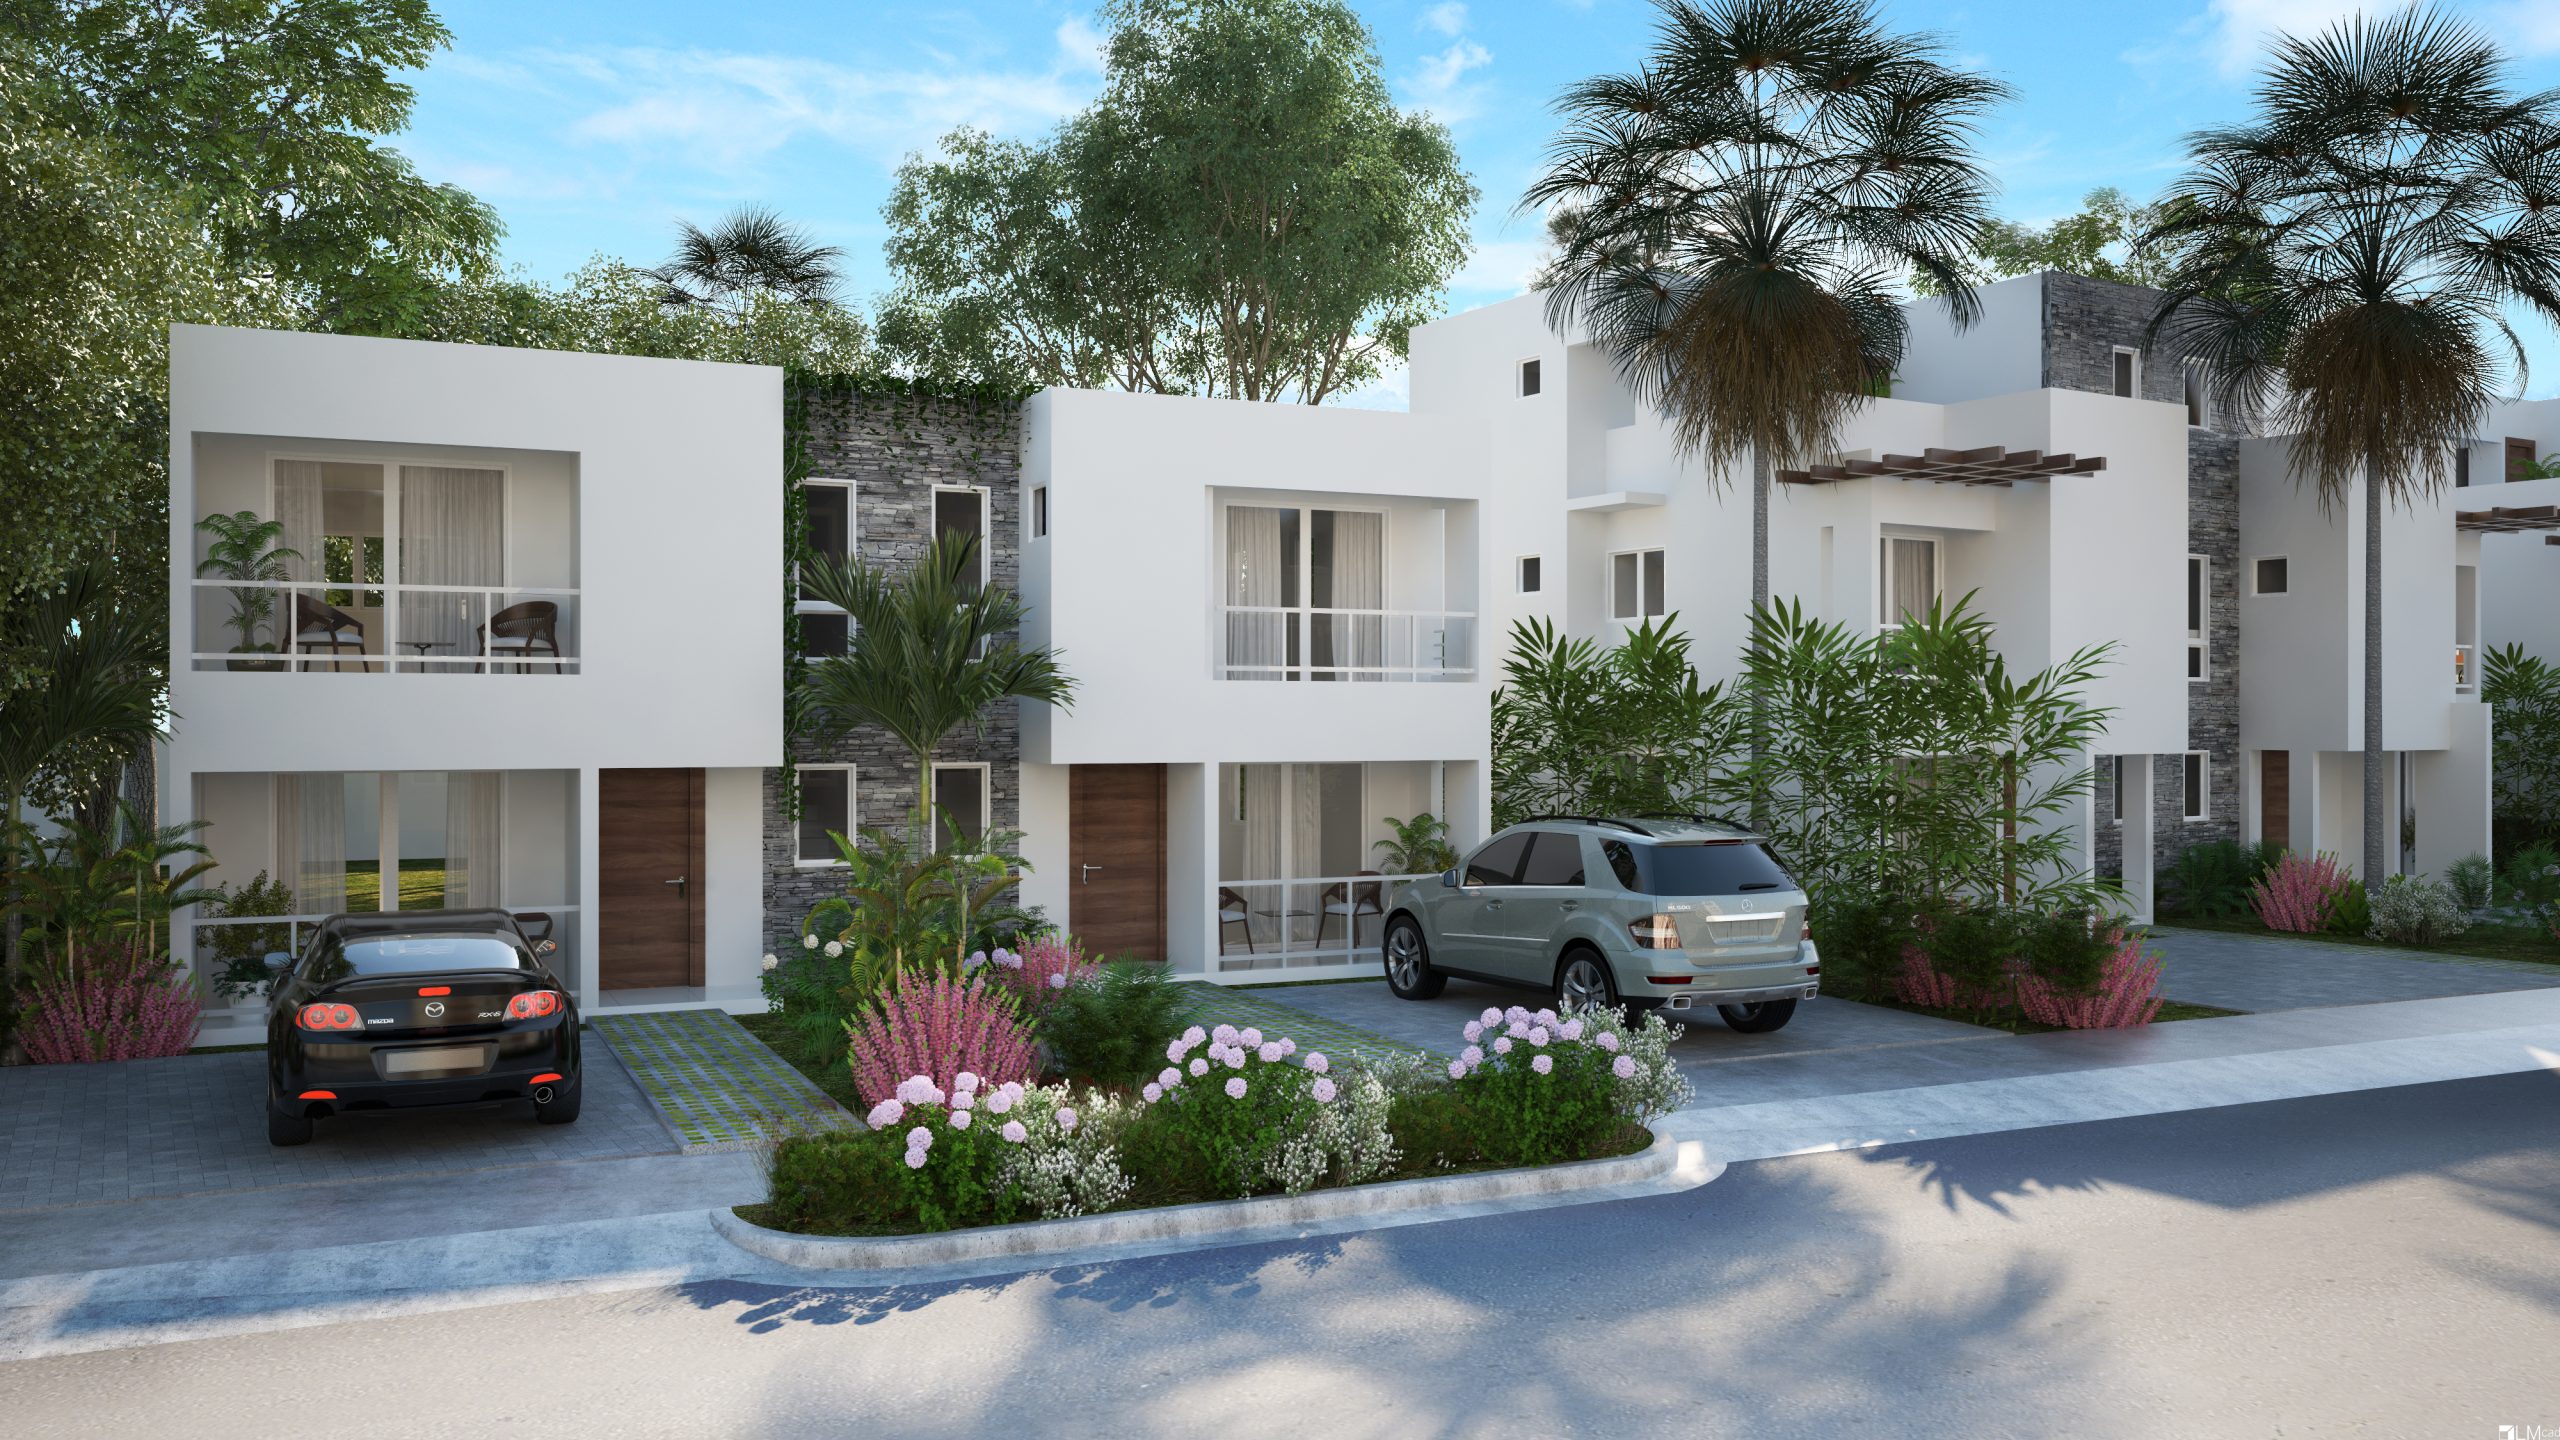 Apartamentos en Punta Cana Crisfer. Invierte y genera ingresos por renta